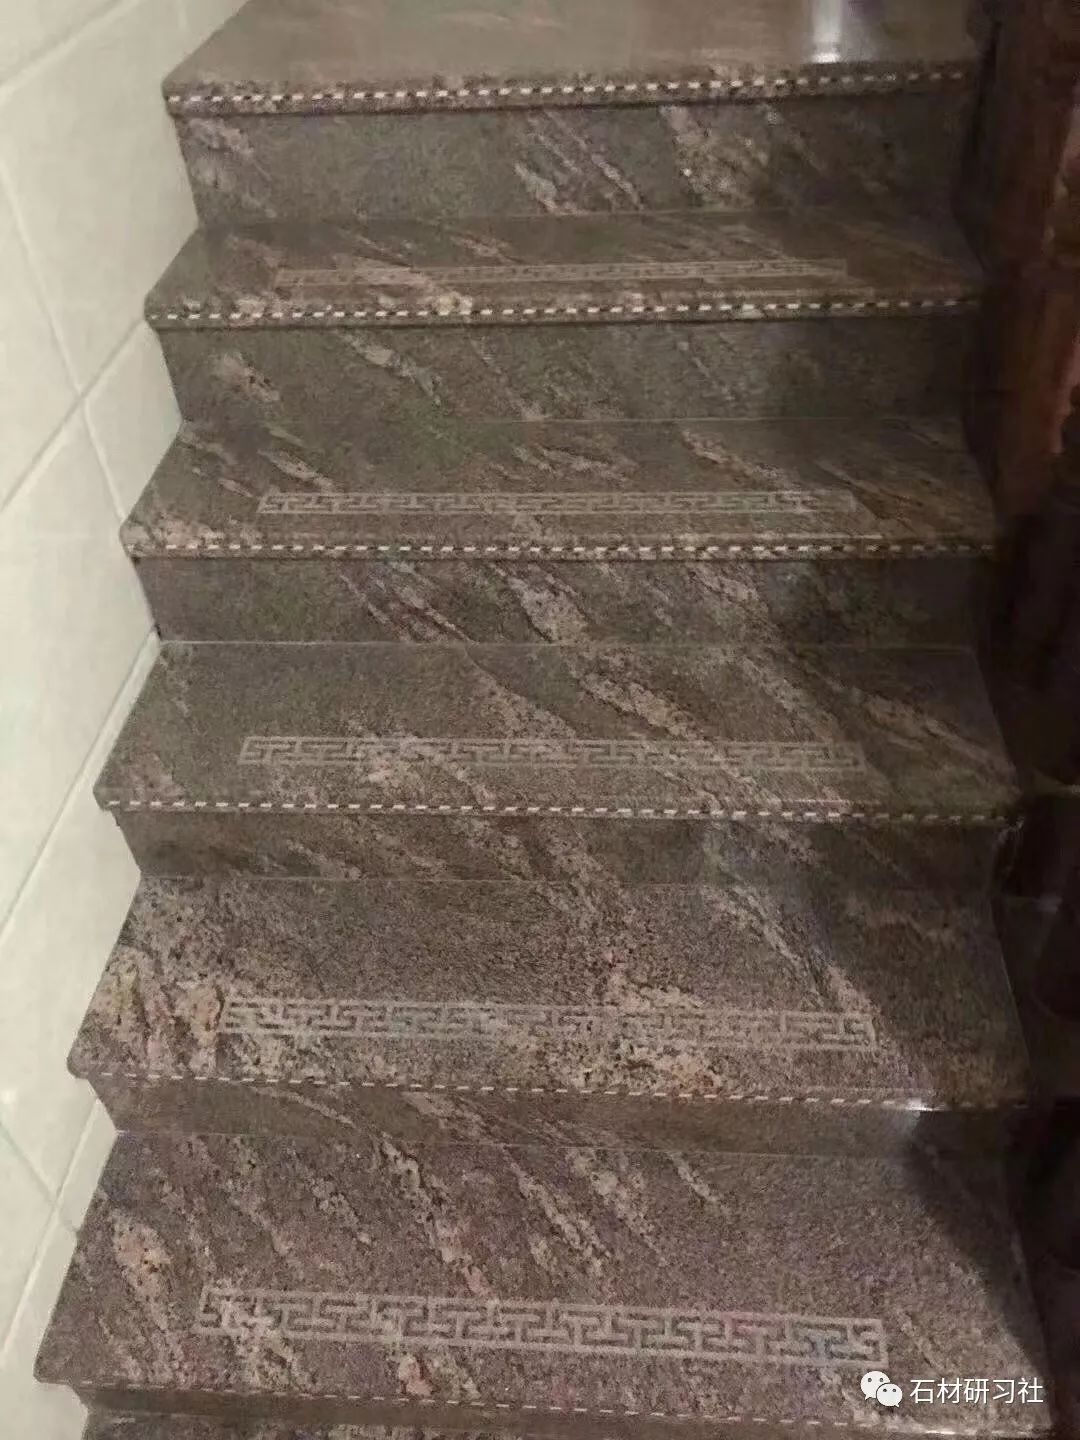 花岗岩作为楼梯装饰材料,不易风化磨损,为了防滑,做一些防滑工艺也是